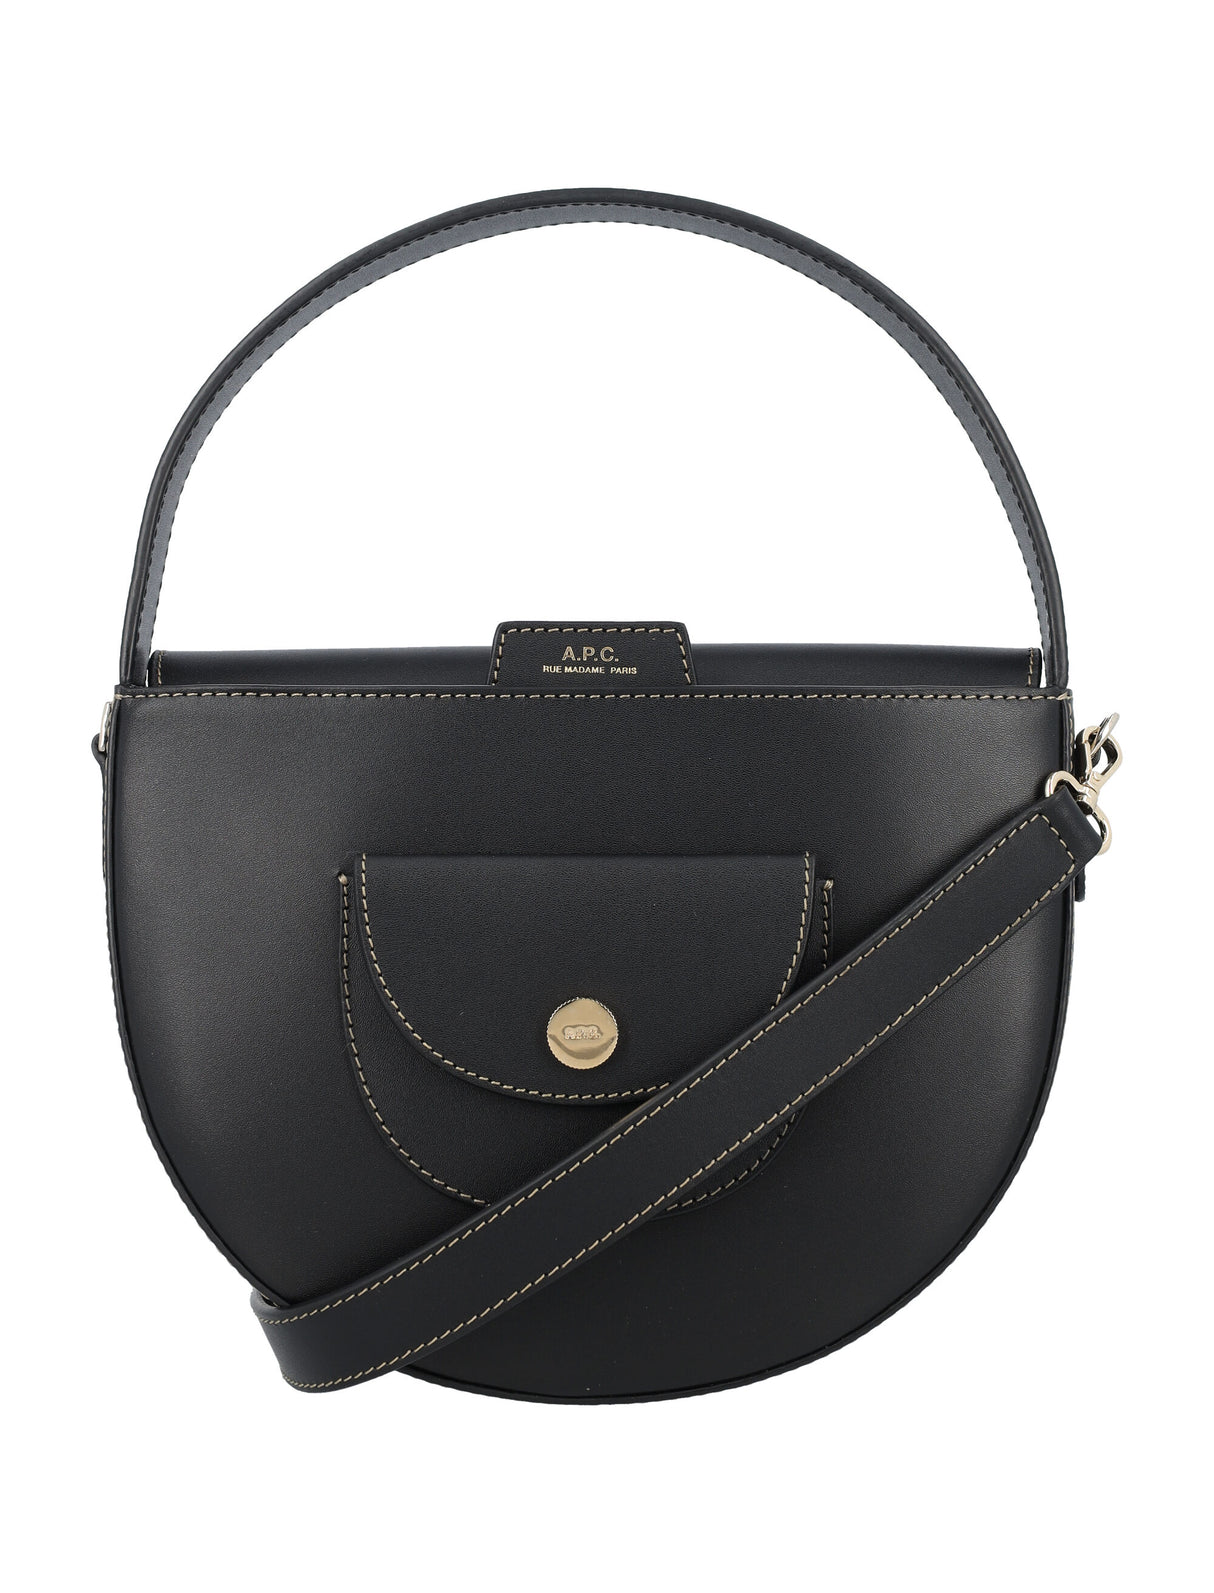 A.P.C. LE POCKET SMALL Handbag